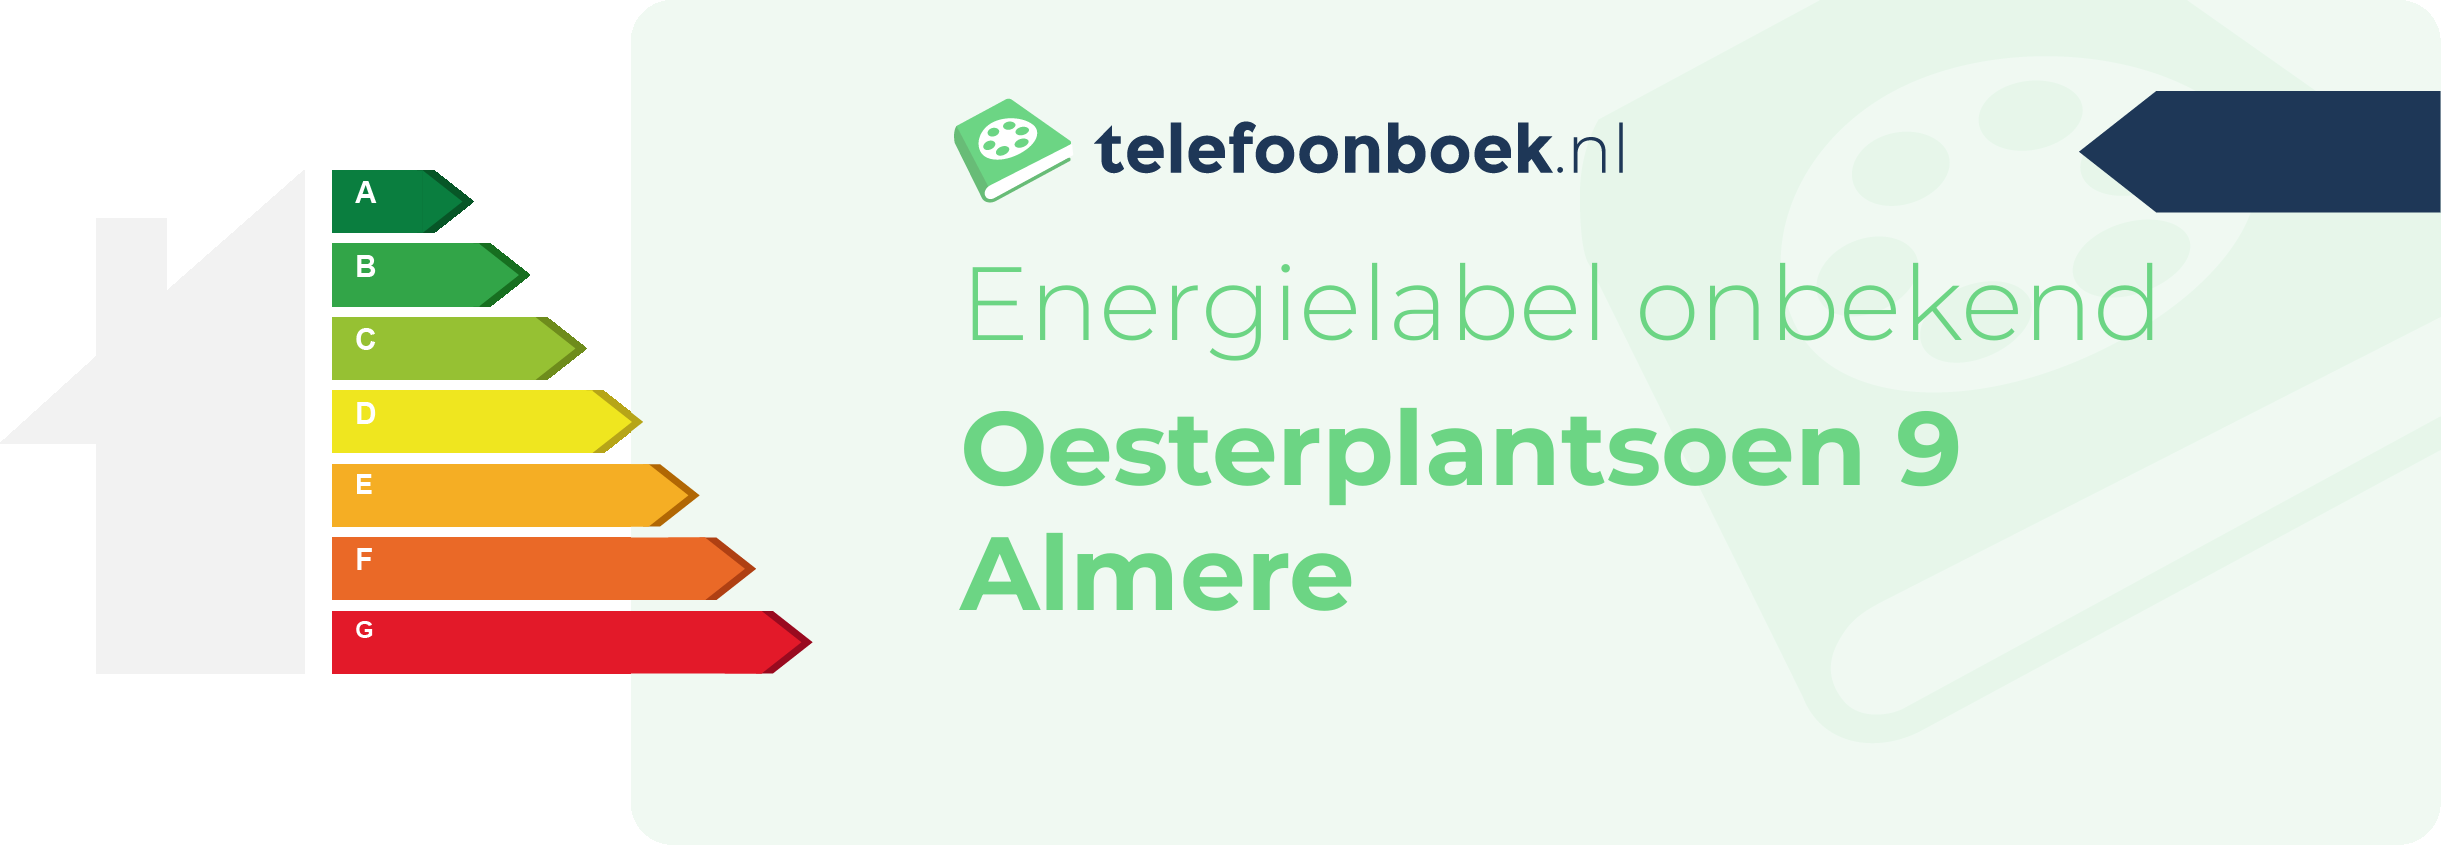 Energielabel Oesterplantsoen 9 Almere